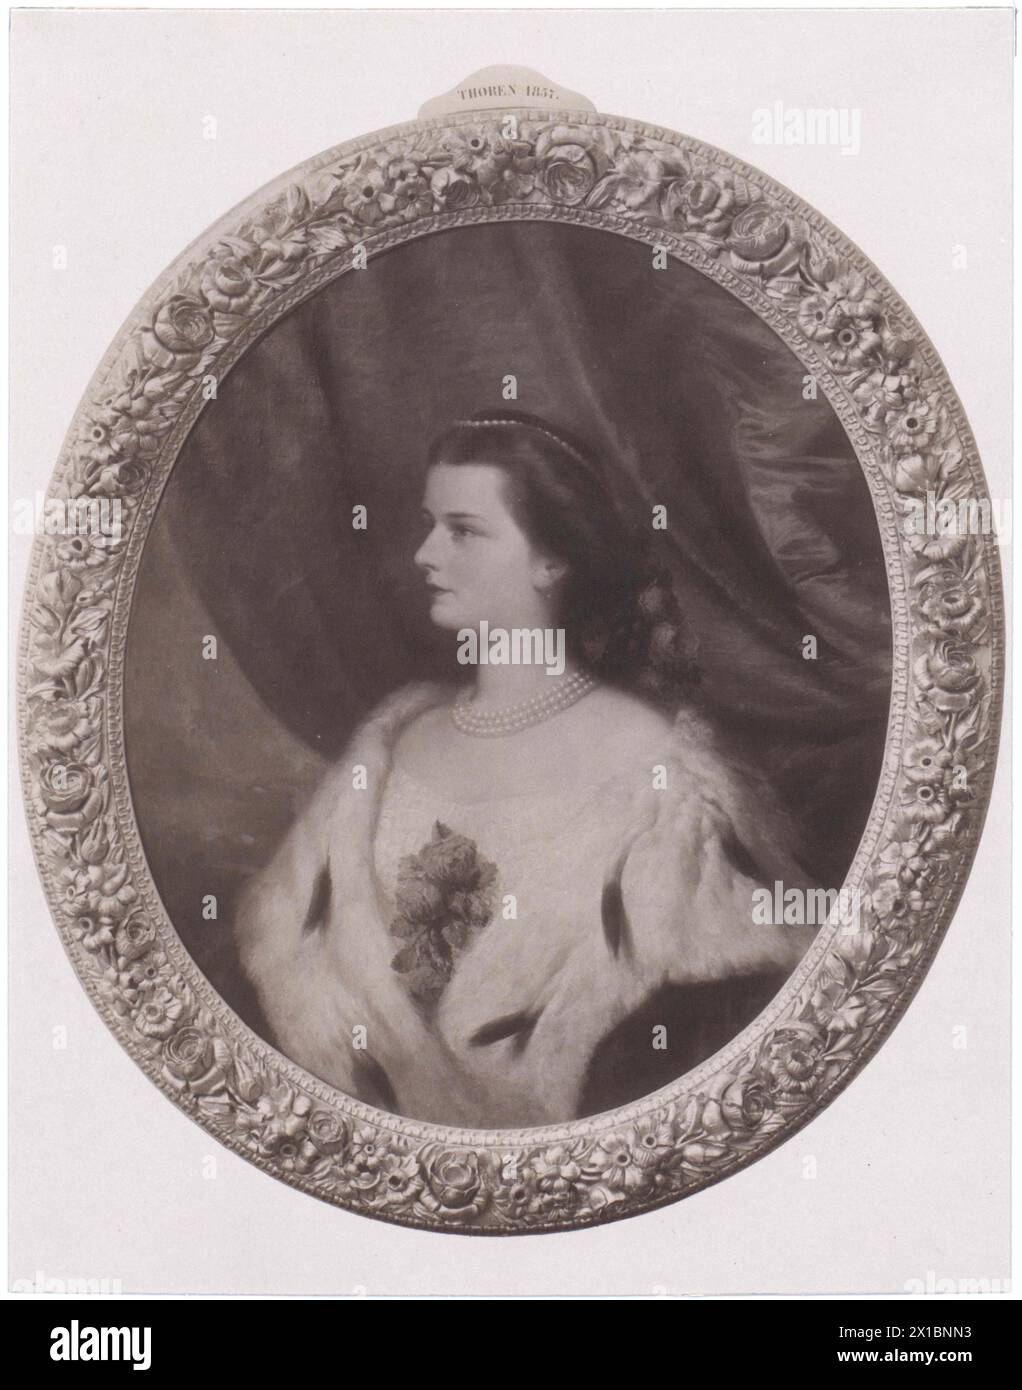 Elisabeth, impératrice d'Autriche, reproduction d'après une peinture de Thoren 1857, - 18570101 PD0131 - Rechteinfo : droits gérés (RM) Banque D'Images